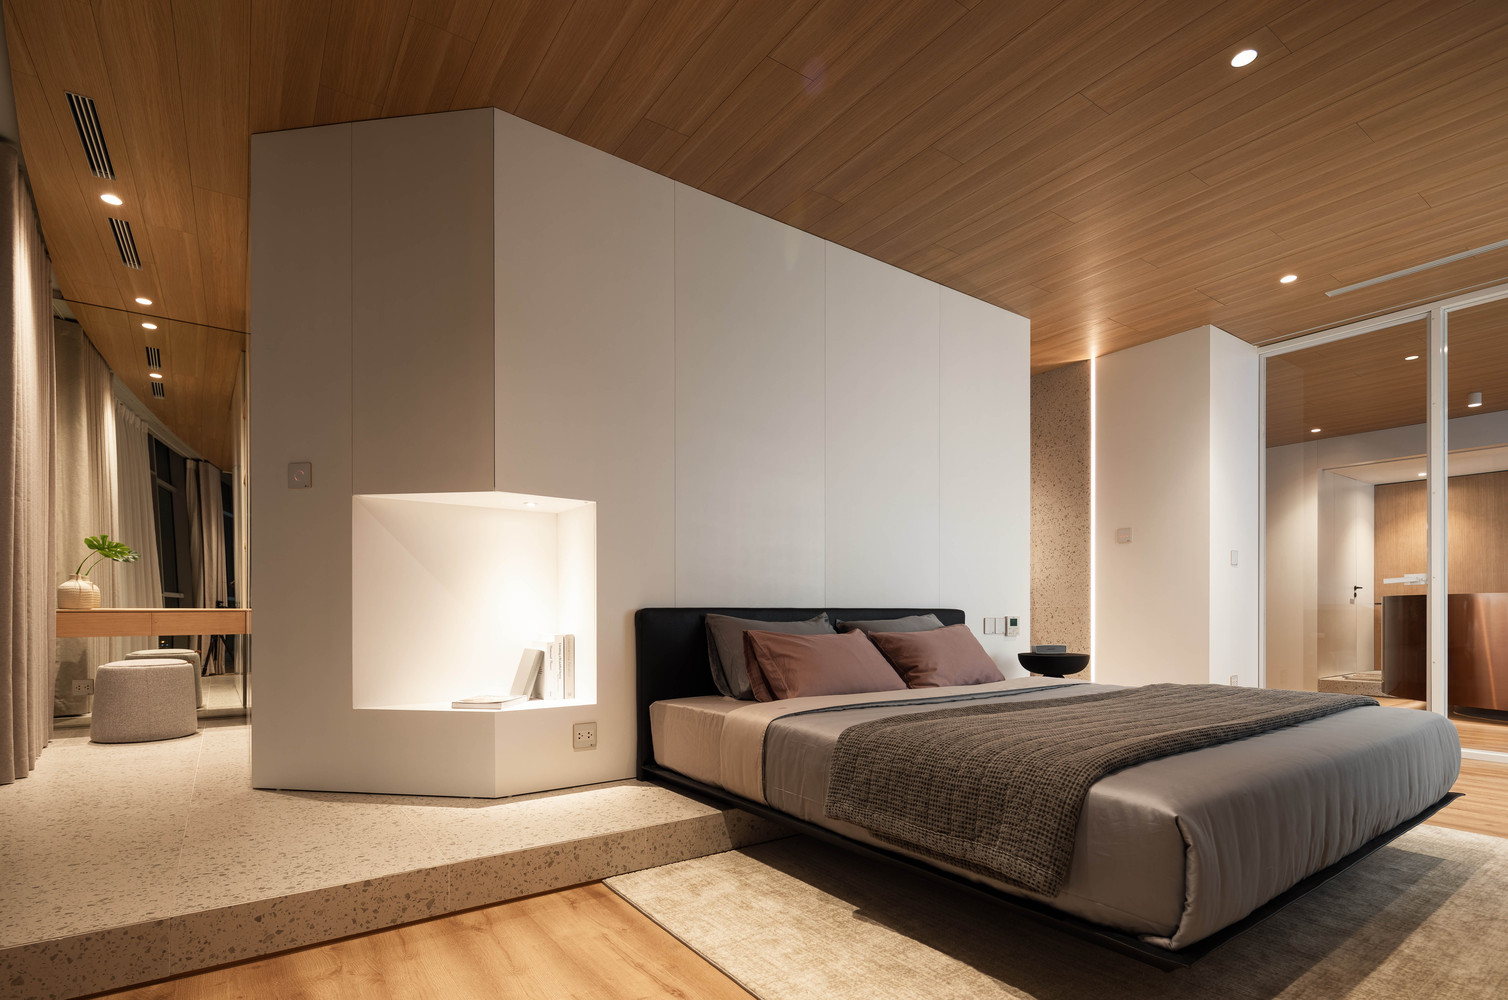 cải tạo căn hộ với toàn cảnh phòng ngủ với trần ốp gỗ, khối tủ màu trắng cao kịch trần ở đầu giường, góc trang điểm